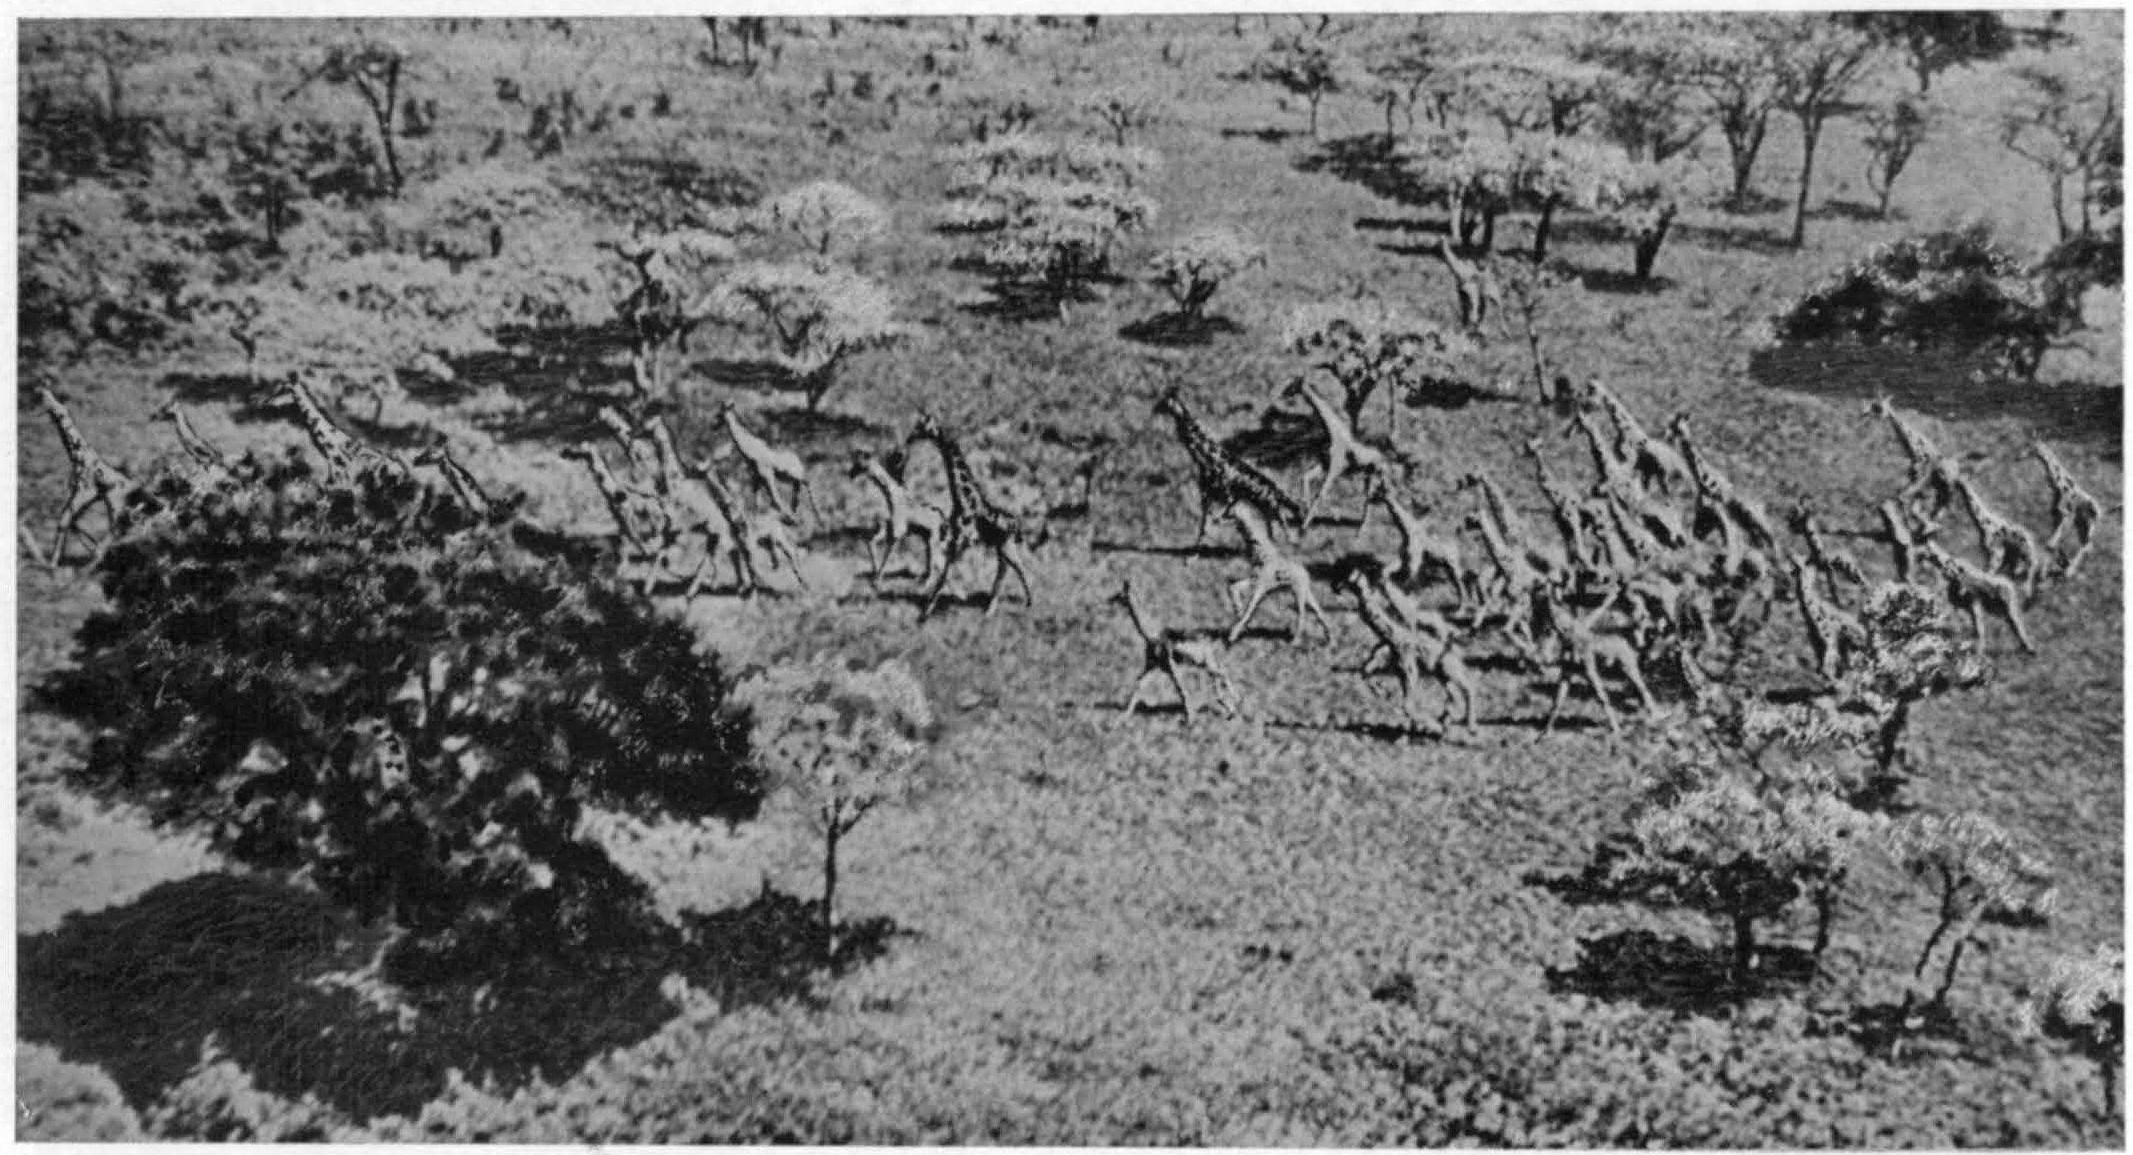 Рис. XI. Стадо жираф в Центральной Африке (M. Johnson, 1936)